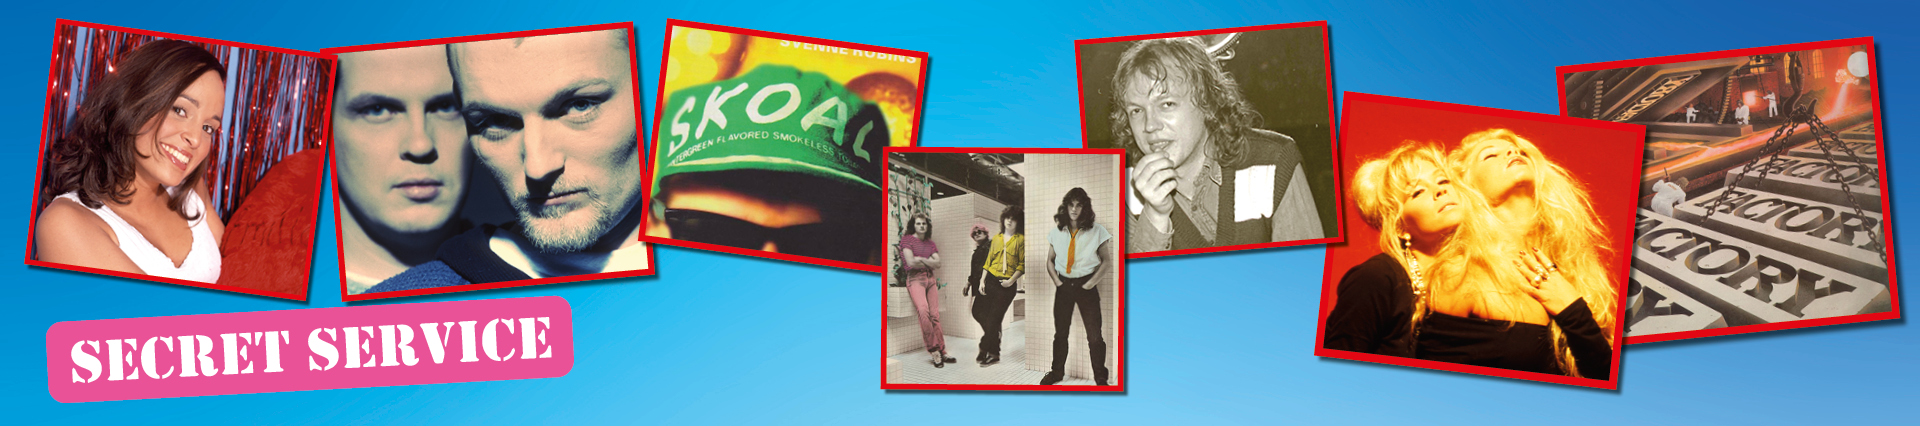 Greatest 80s & 90s – Julshowen med bara hits